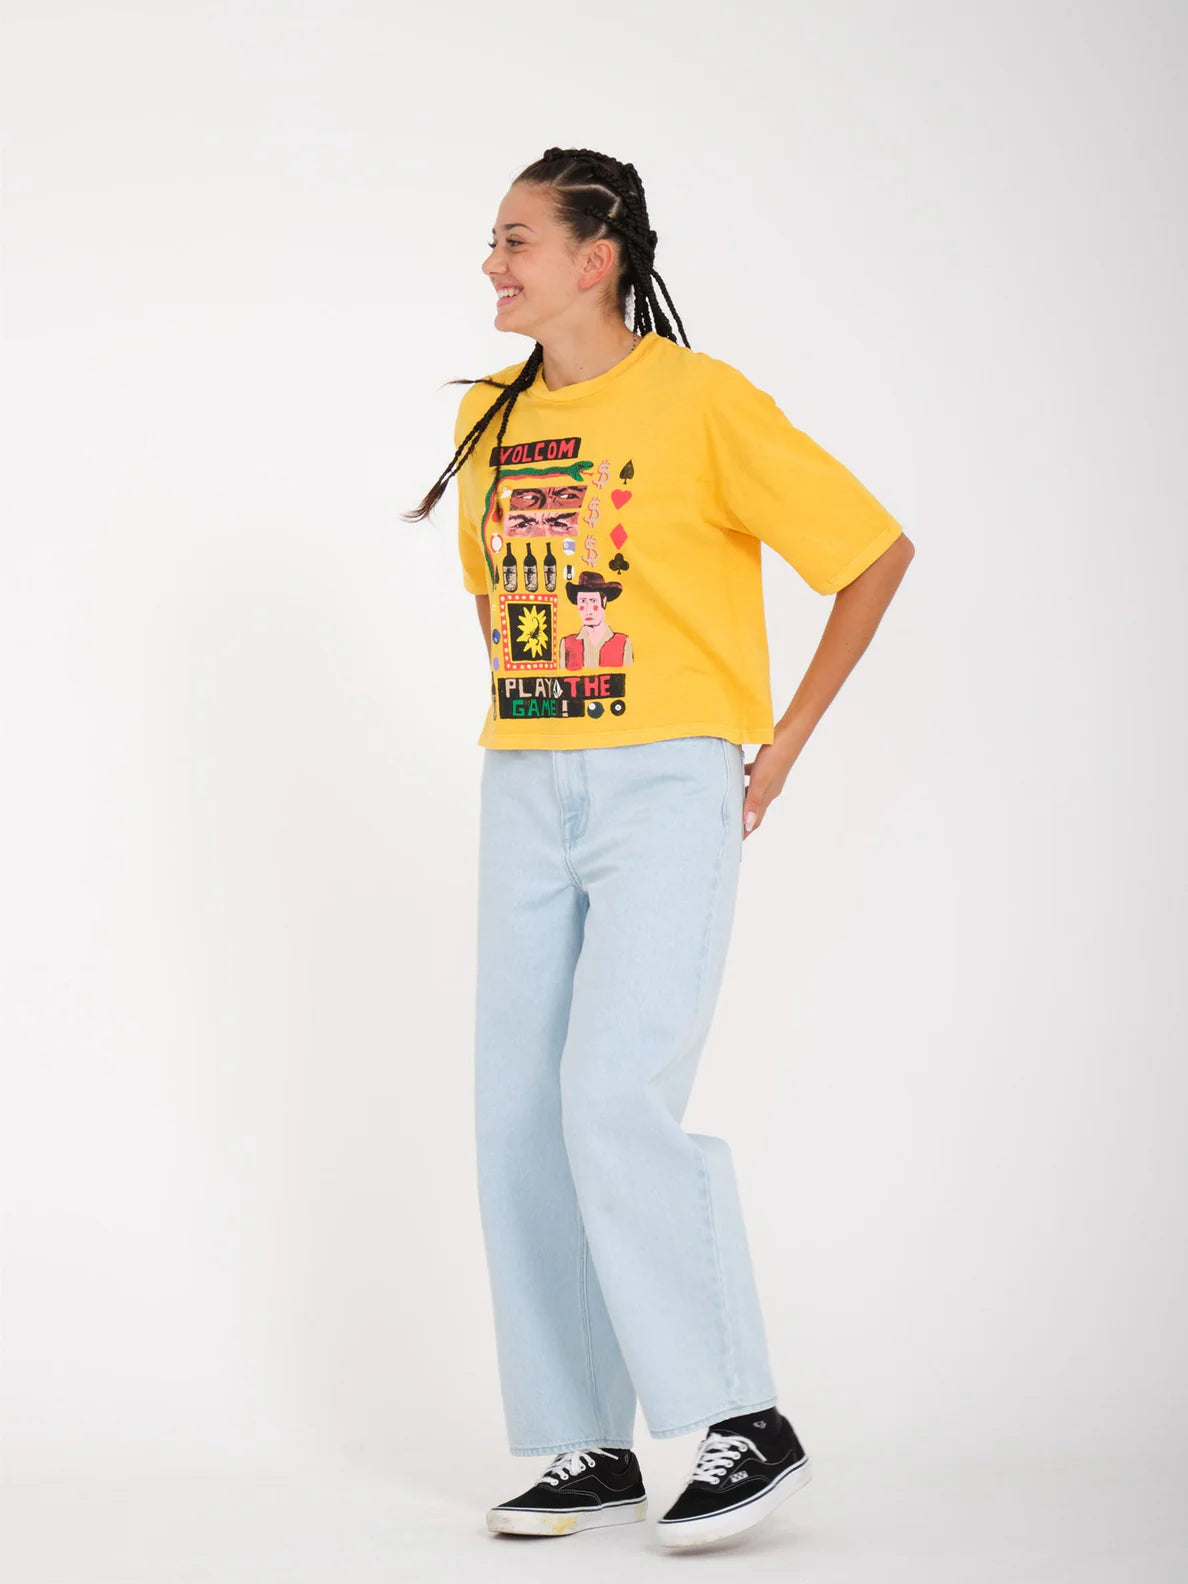 Camiseta Chica Volcom Play The Tee - Citrus | Camisetas manga corta de mujer | Volcom Shop | surfdevils.com